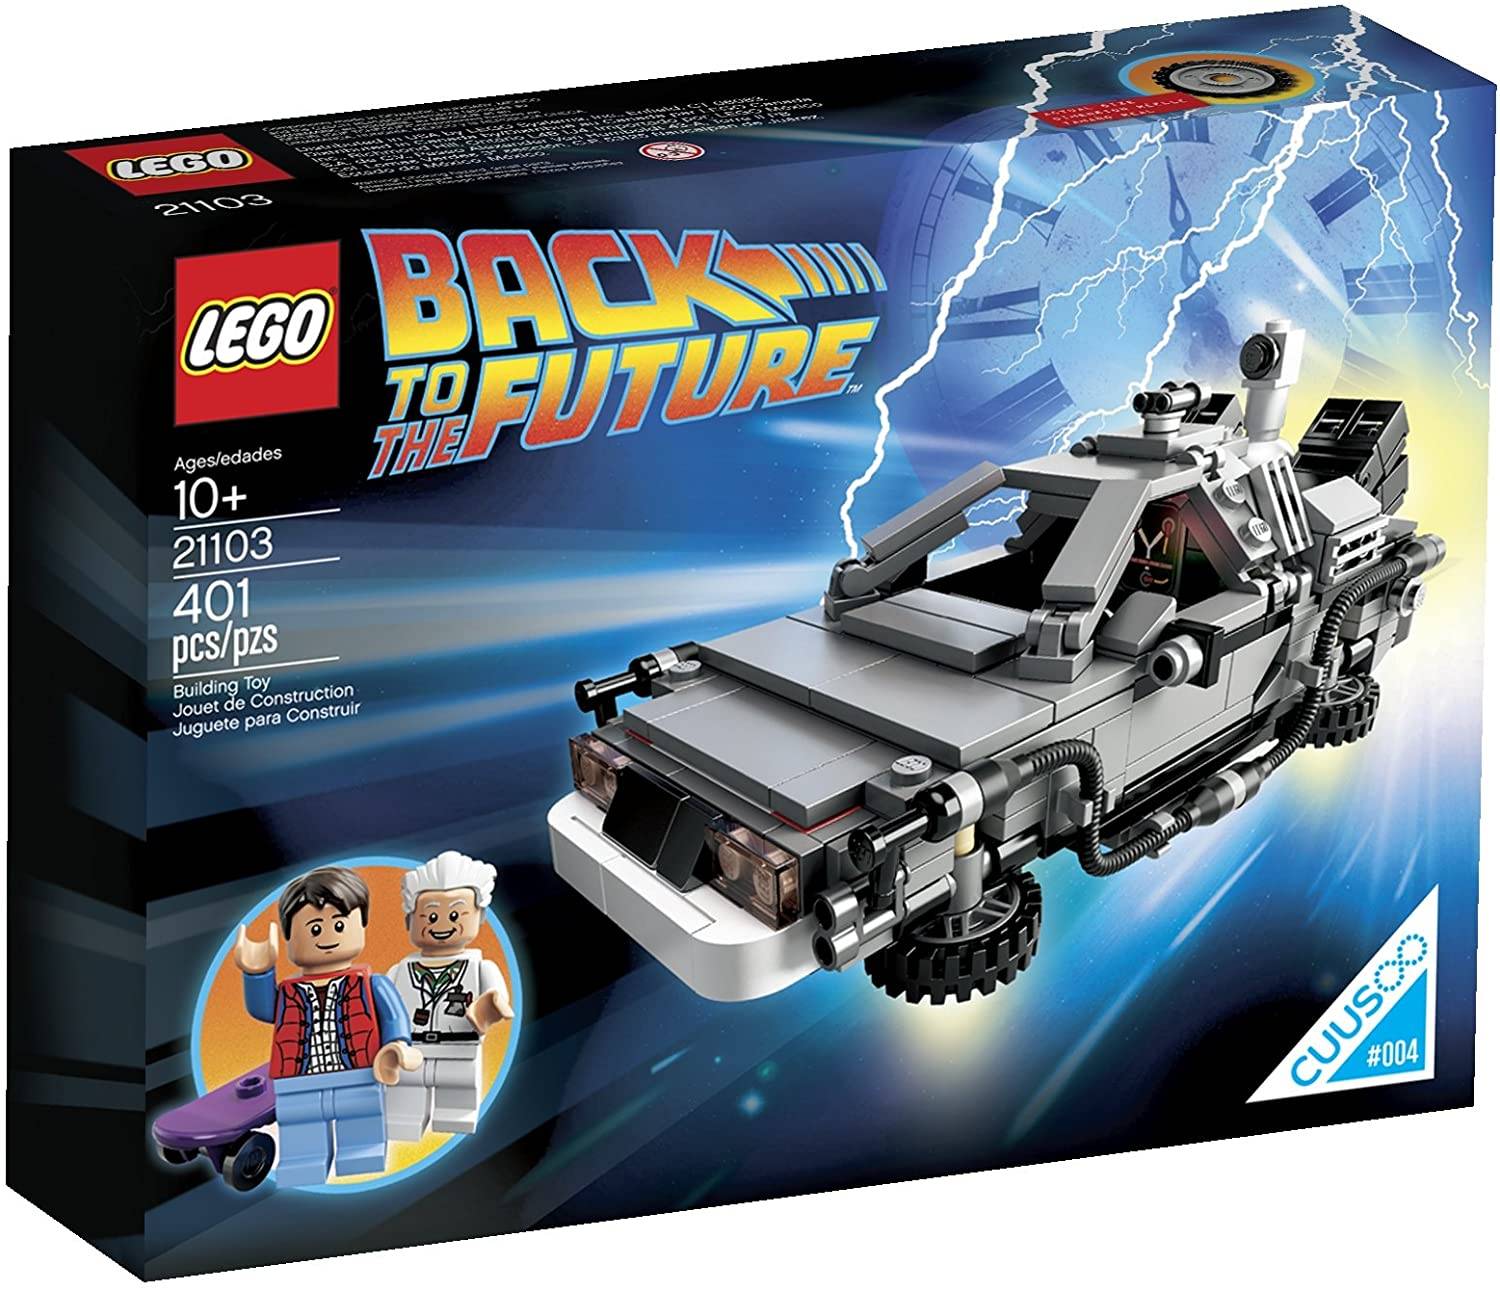 LEGO Back to the Future DeLorean Time Machine